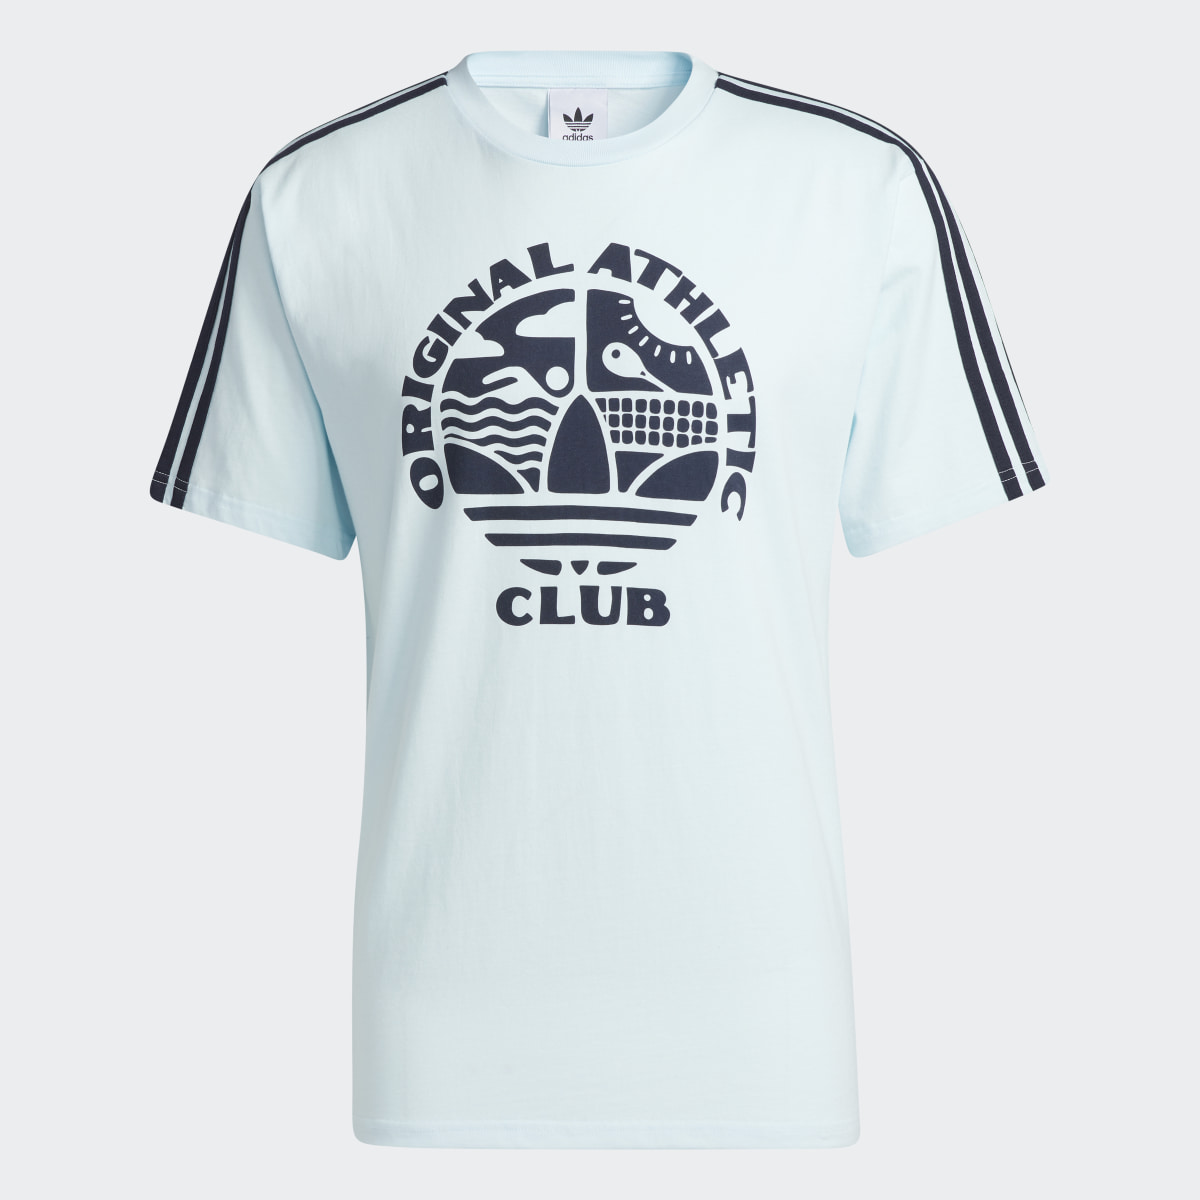 Adidas Original Athletic Club 3-Stripes T-Shirt. 5